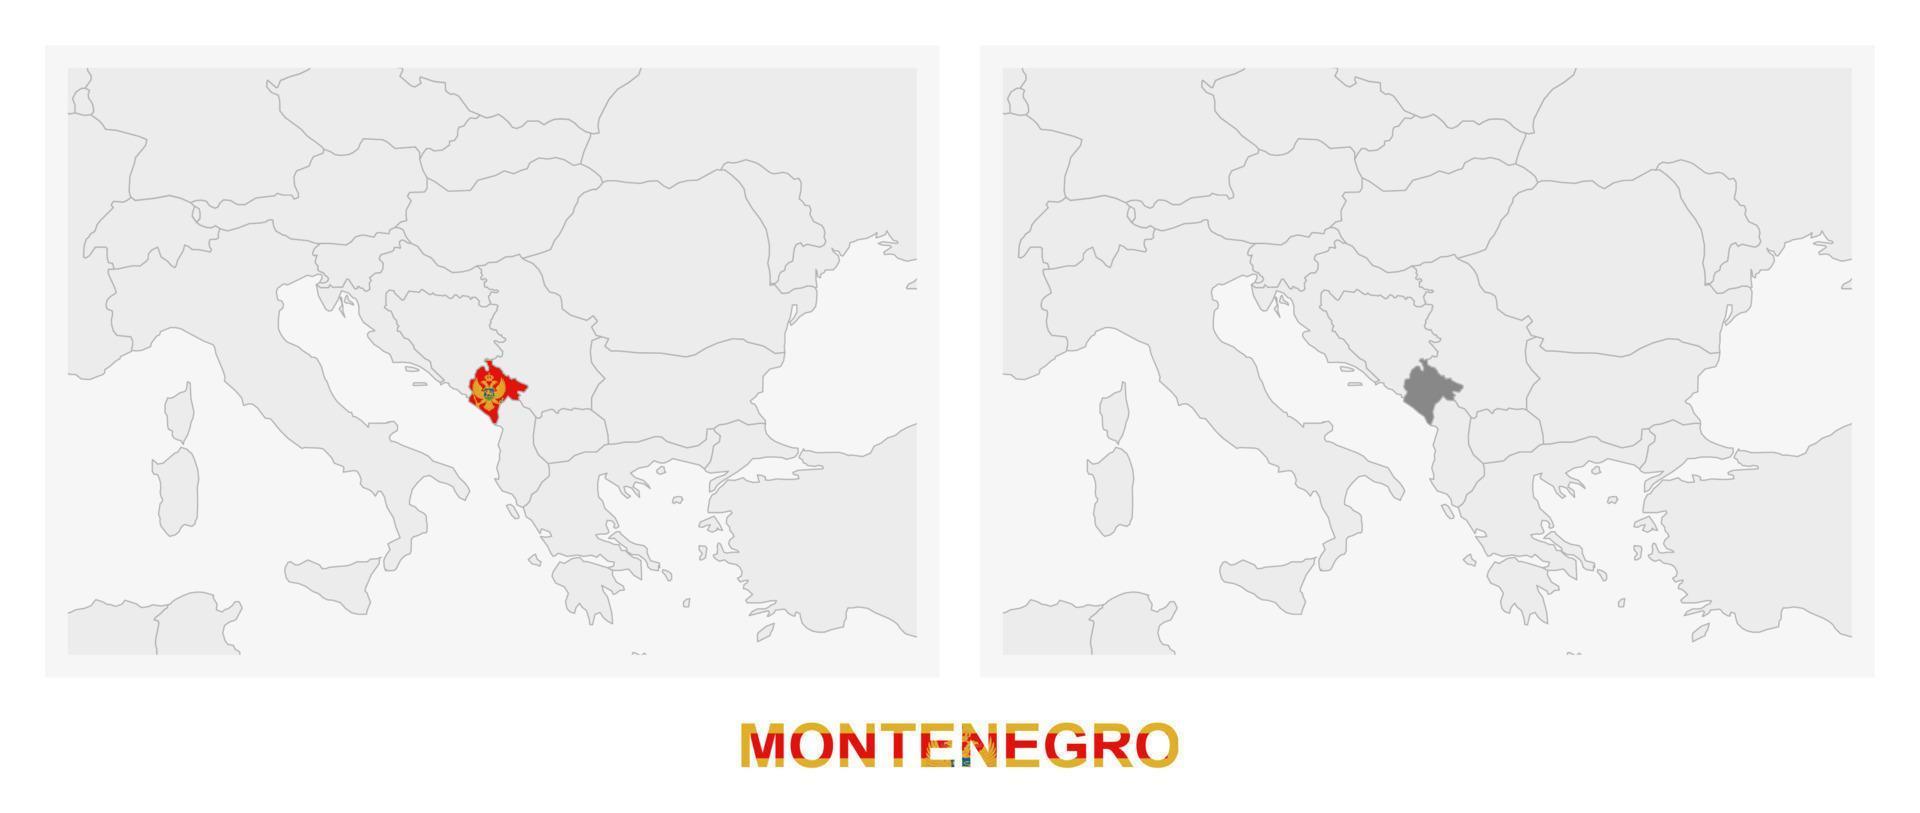 duas versões do mapa de montenegro, com a bandeira de montenegro e destaque em cinza escuro. vetor